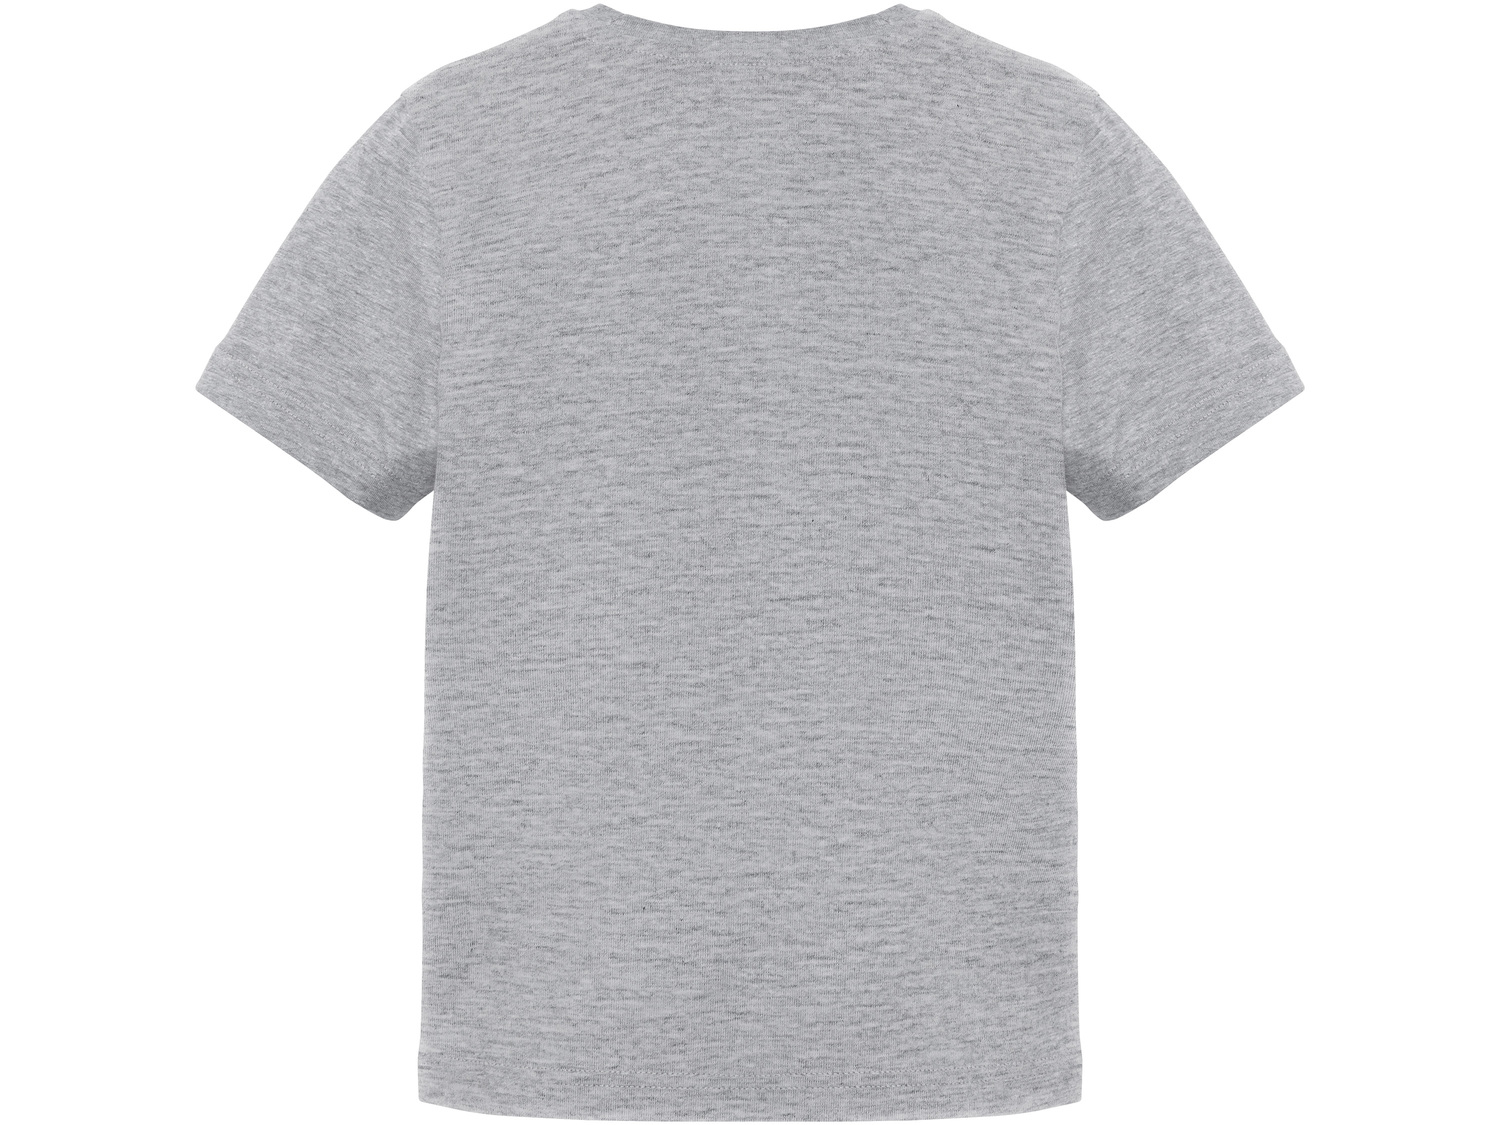 T-shirt chłopięcy Pepperts, cena 9,99 PLN 
- rozmiary: 122-152
- wysoka zawartość ...